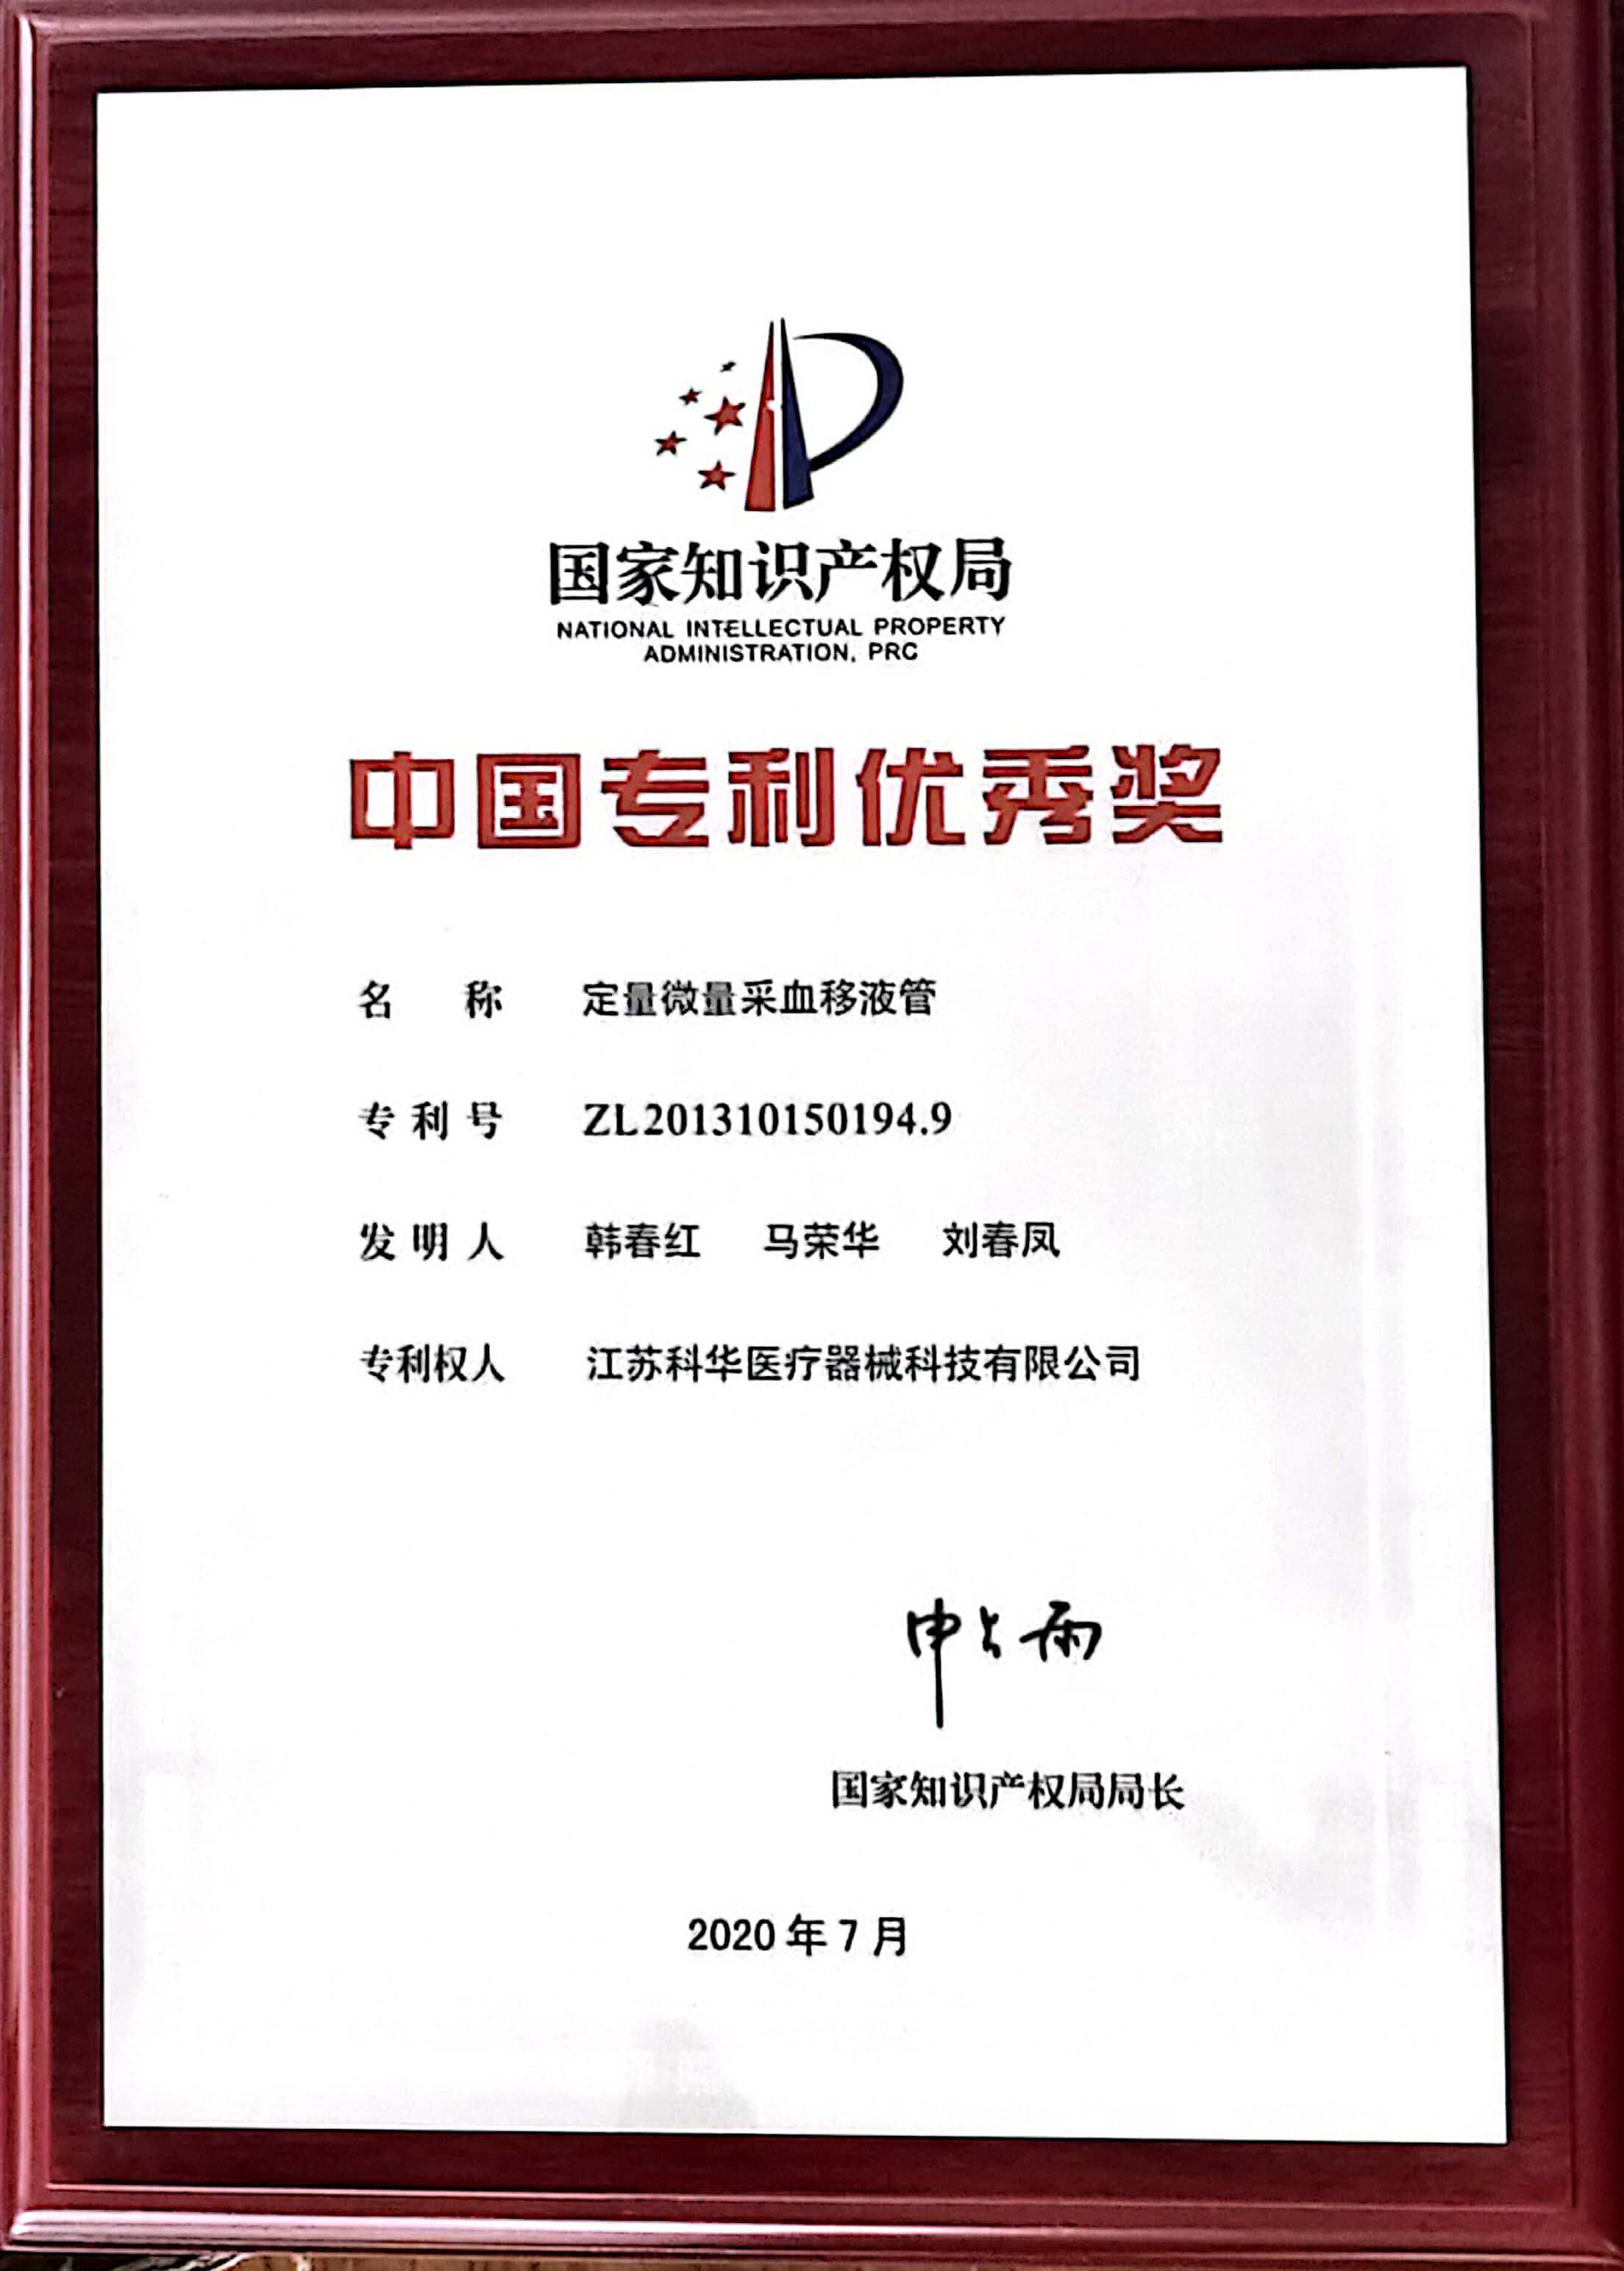 江苏科华公司喜获第21届中国专利优秀奖